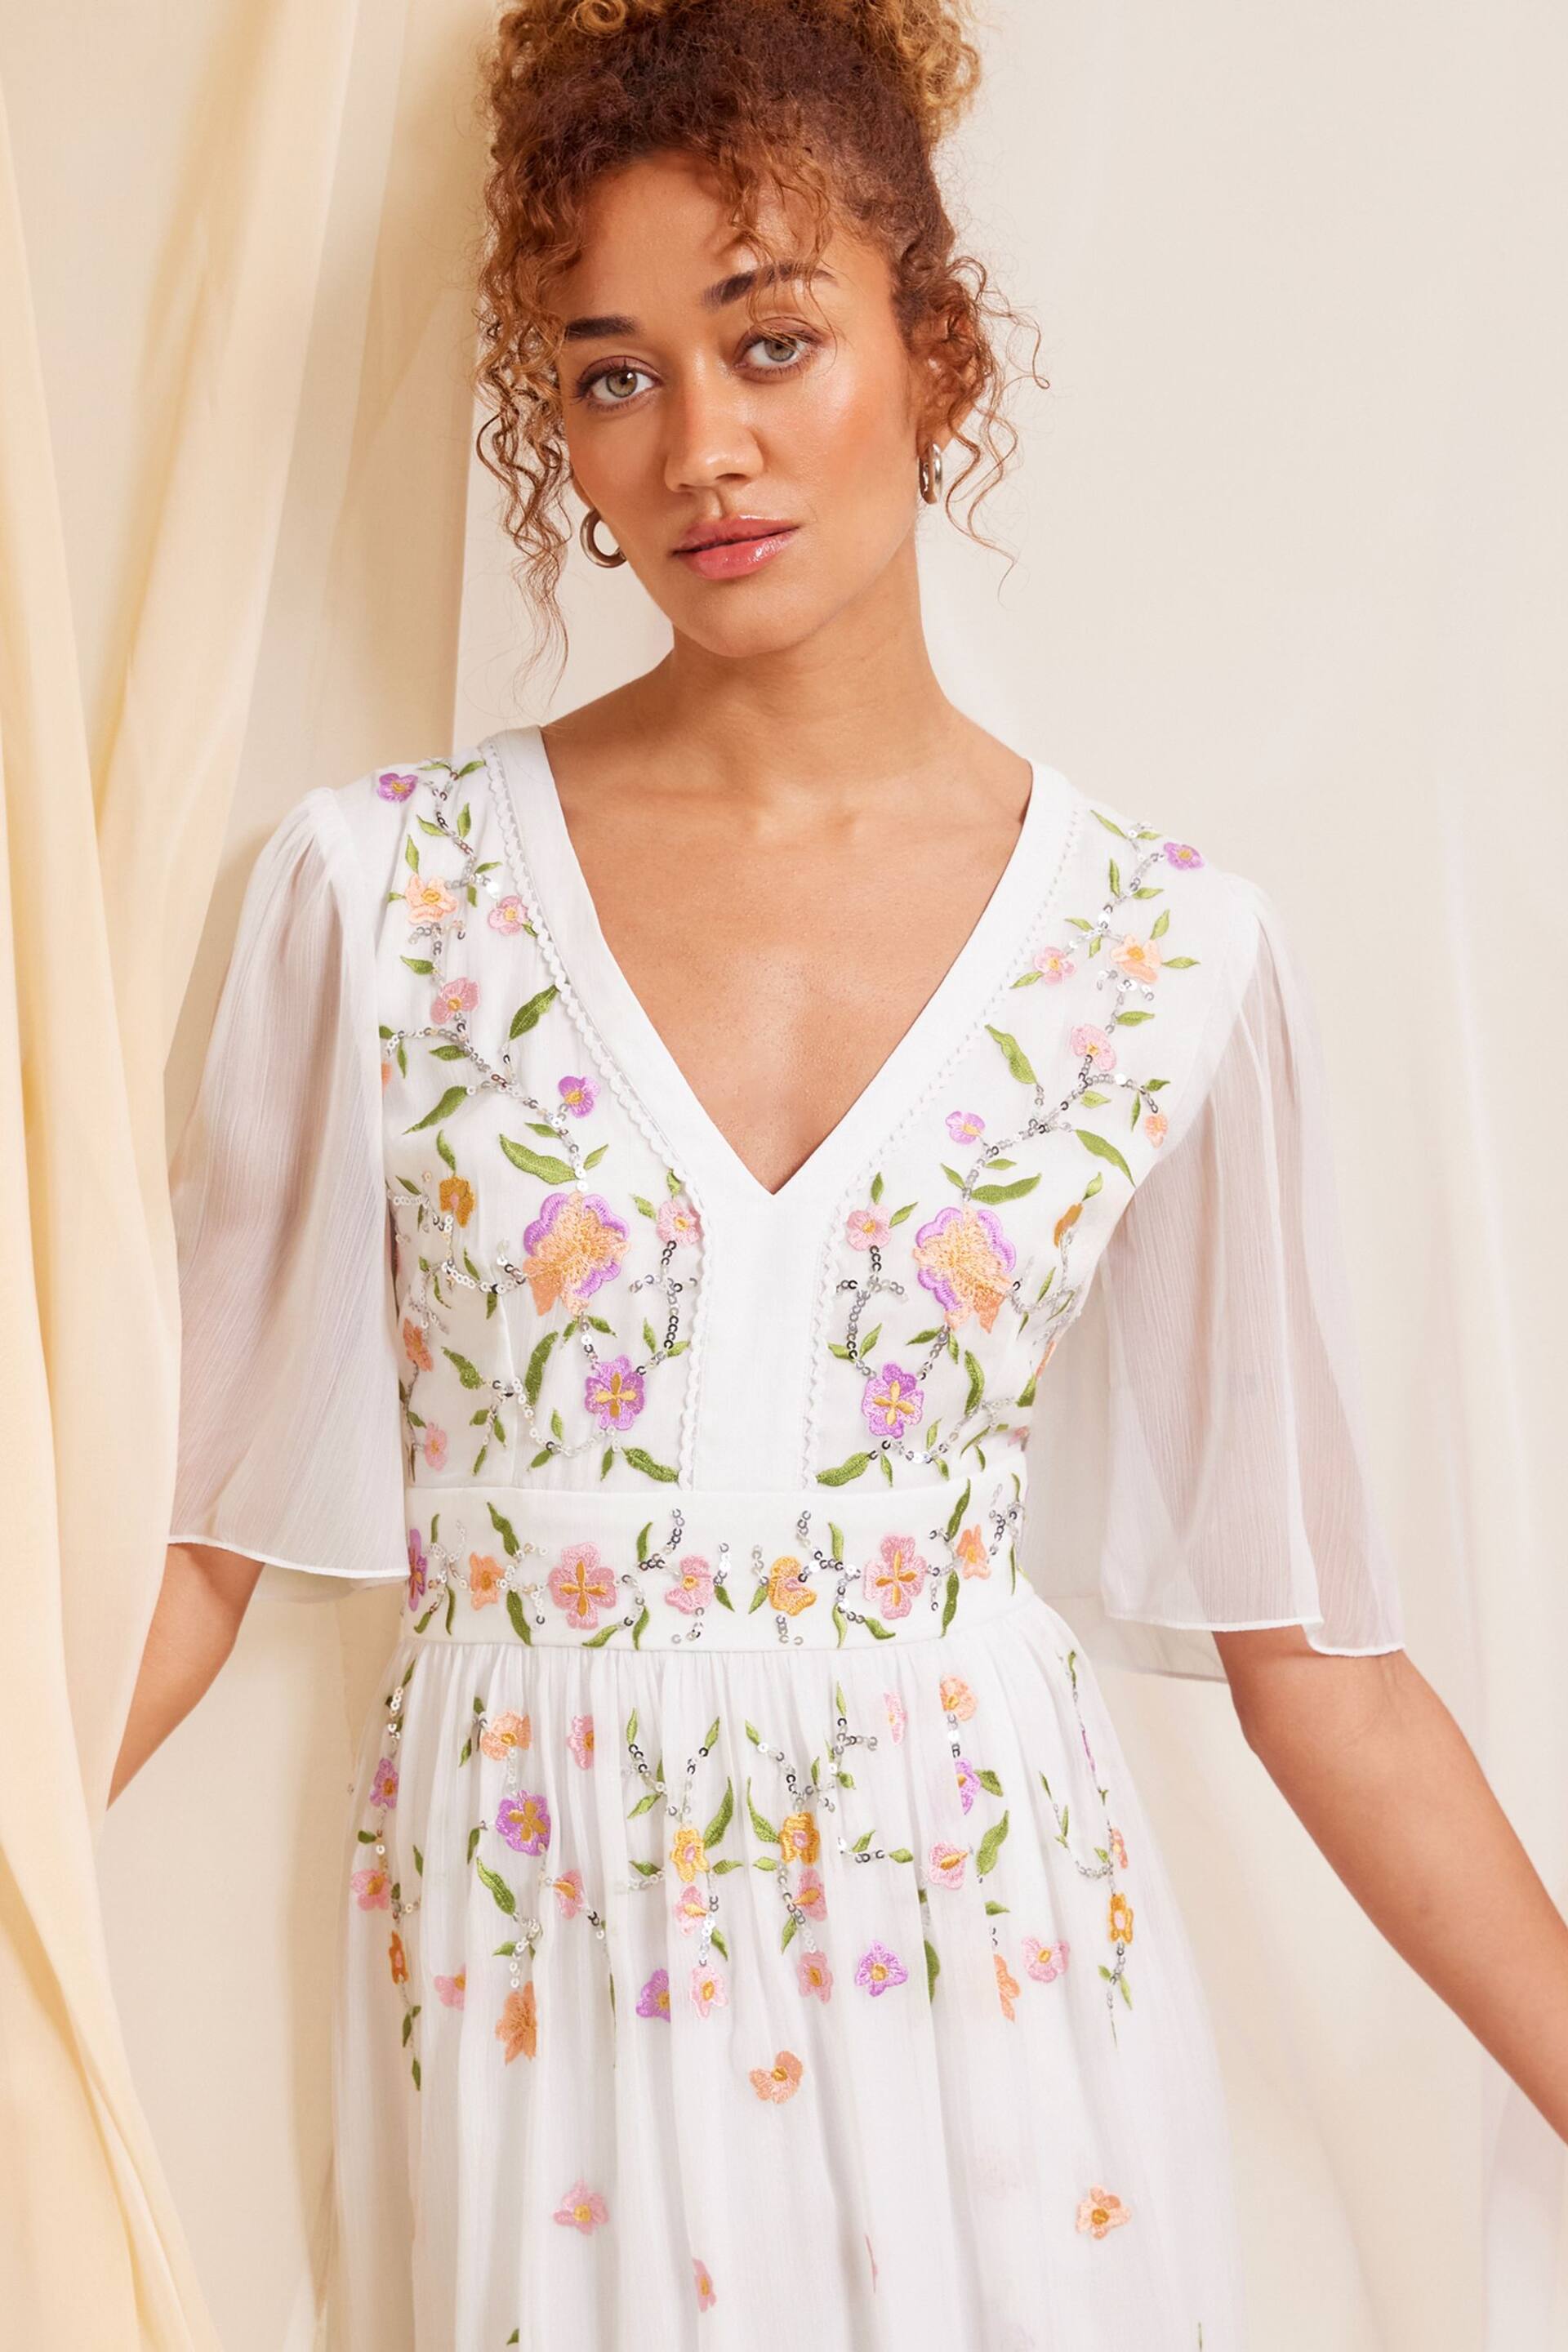 Love & Roses Ivory White Embellished Chiffon Flutter Sleeve Maxi Dress - Image 2 of 4